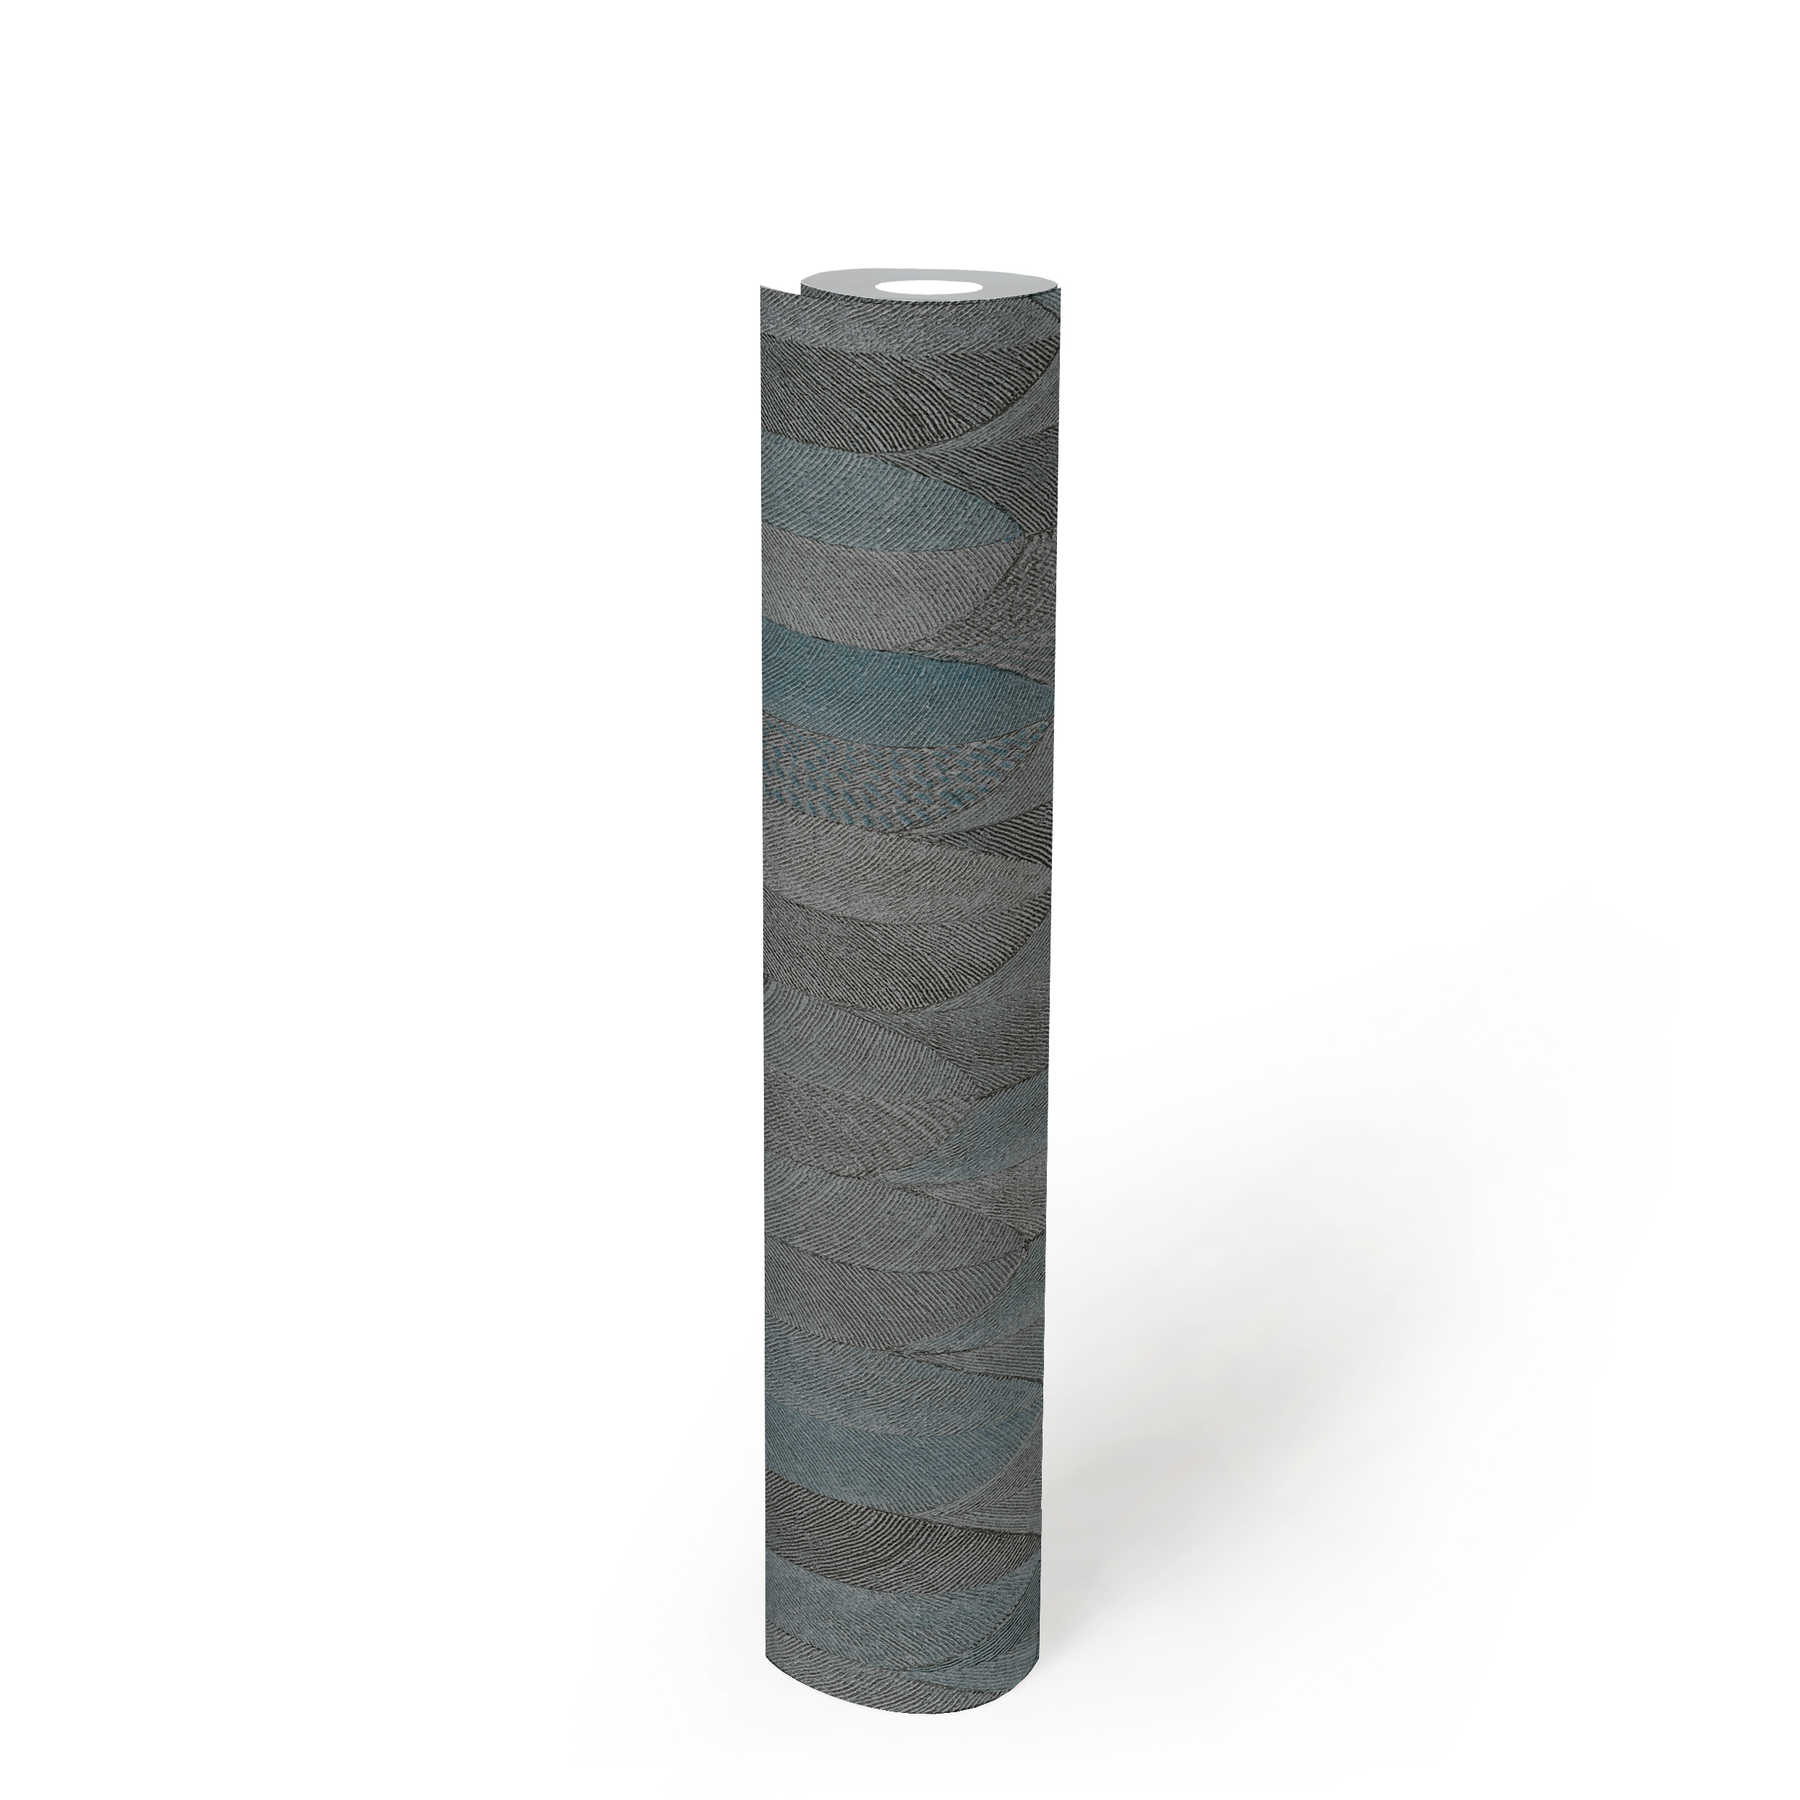             Papel pintado de diseño simétrico con efecto metálico - gris, azul, negro
        